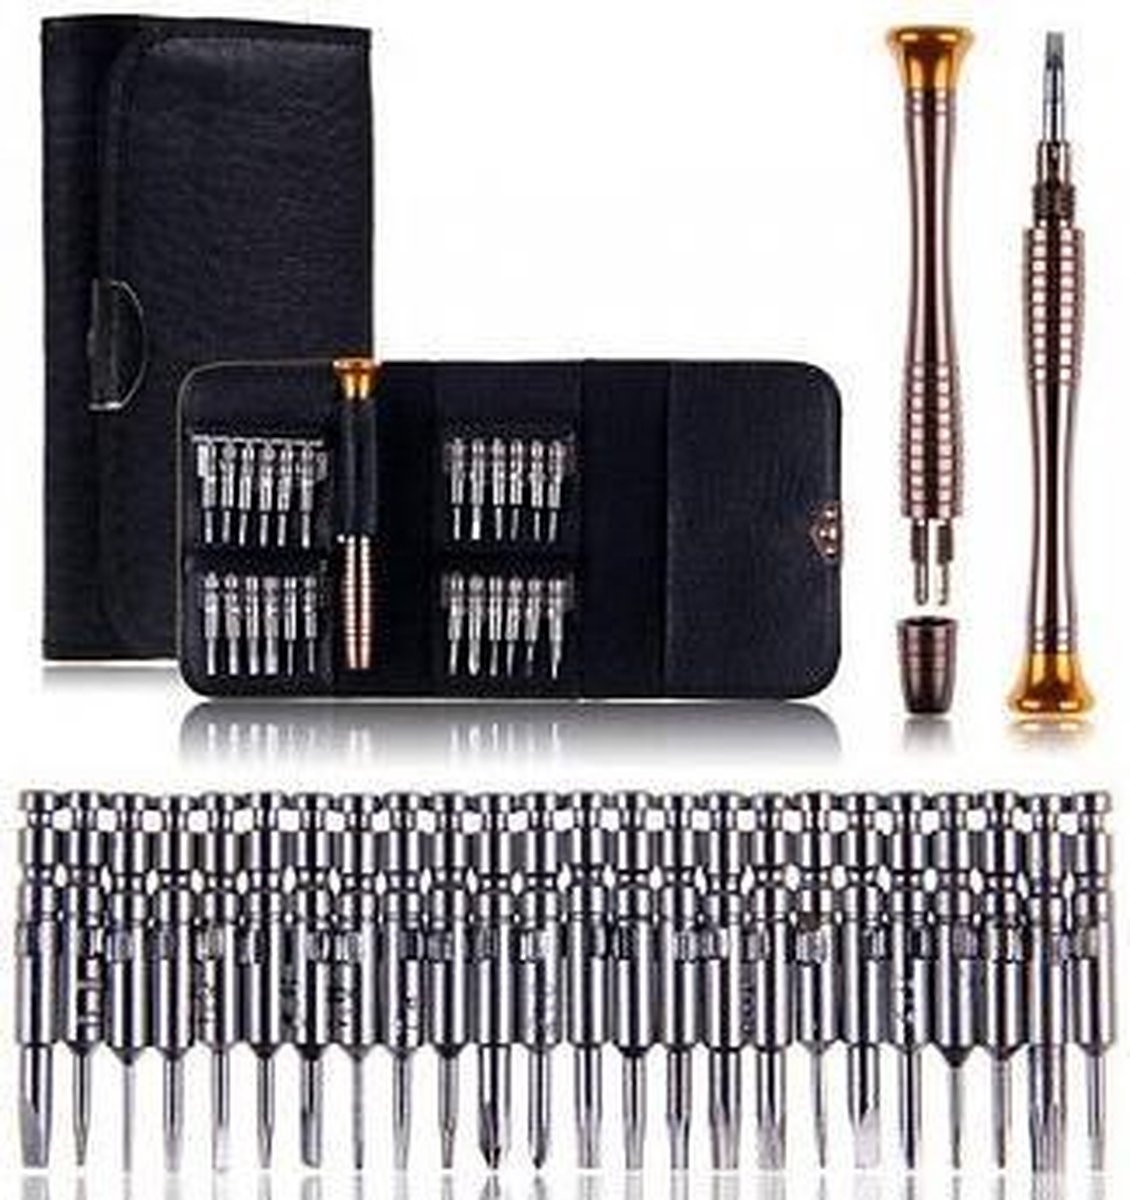 Reparatie Set Professionele Tool Kit - 25 in 1